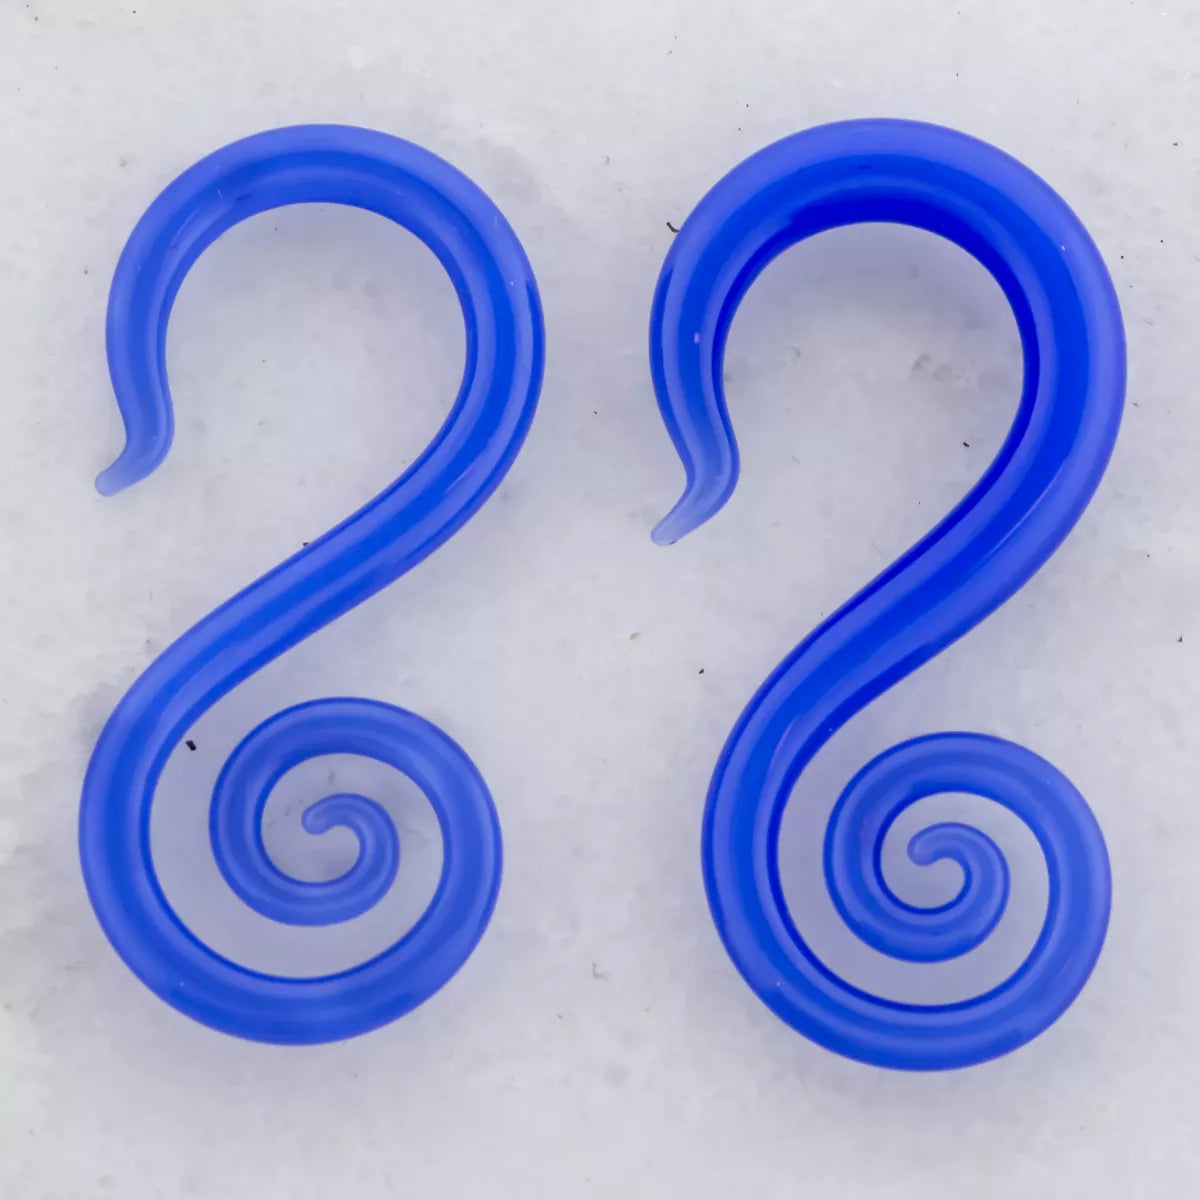 Tapers - Spirals Borosilicate Glass Electric Blue Seahorse - 1 Piece #SPLT#2 -Rebel Bod-RebelBod